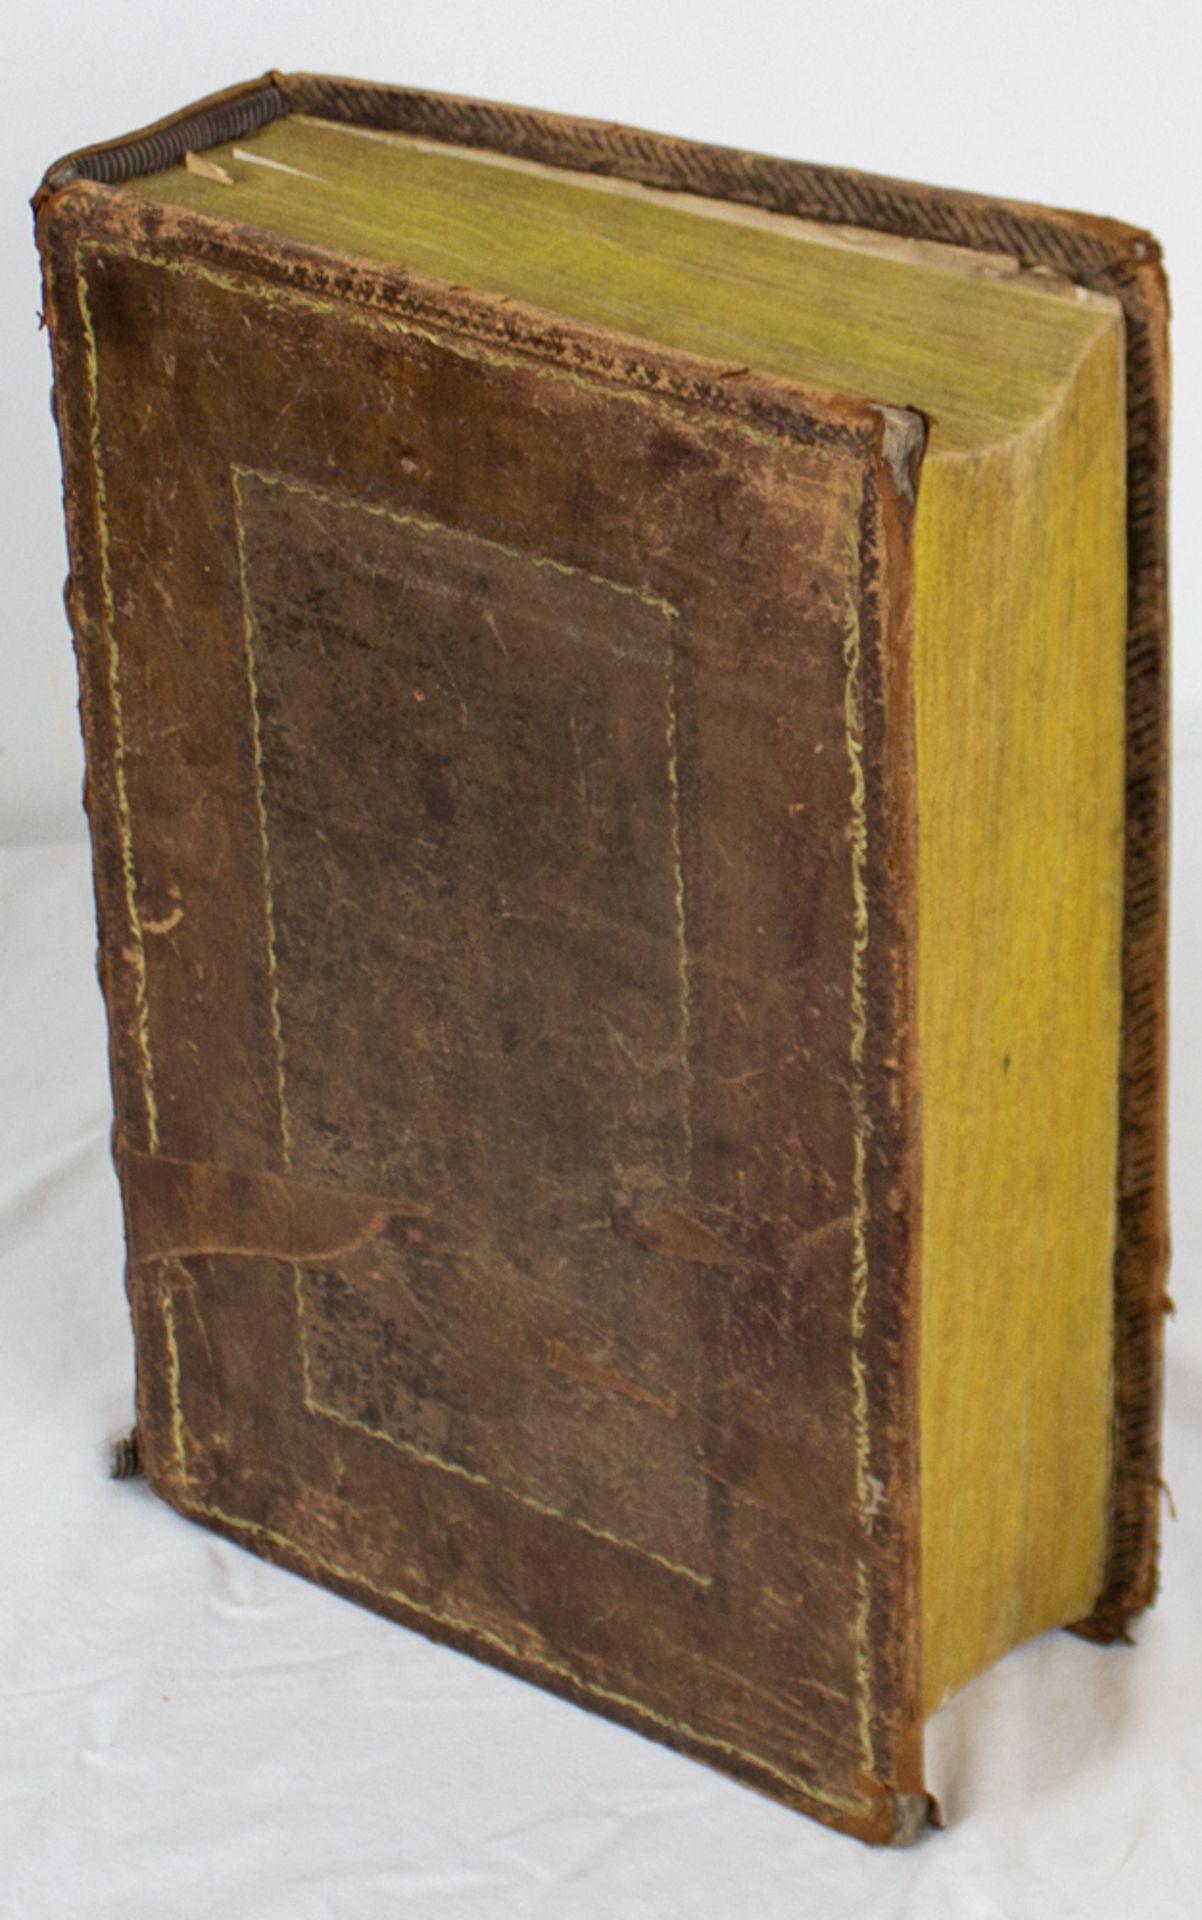 Weigand Bibel, Kolorierte Holzschnitte von Jost Amman, 16. Jh. - Image 6 of 20